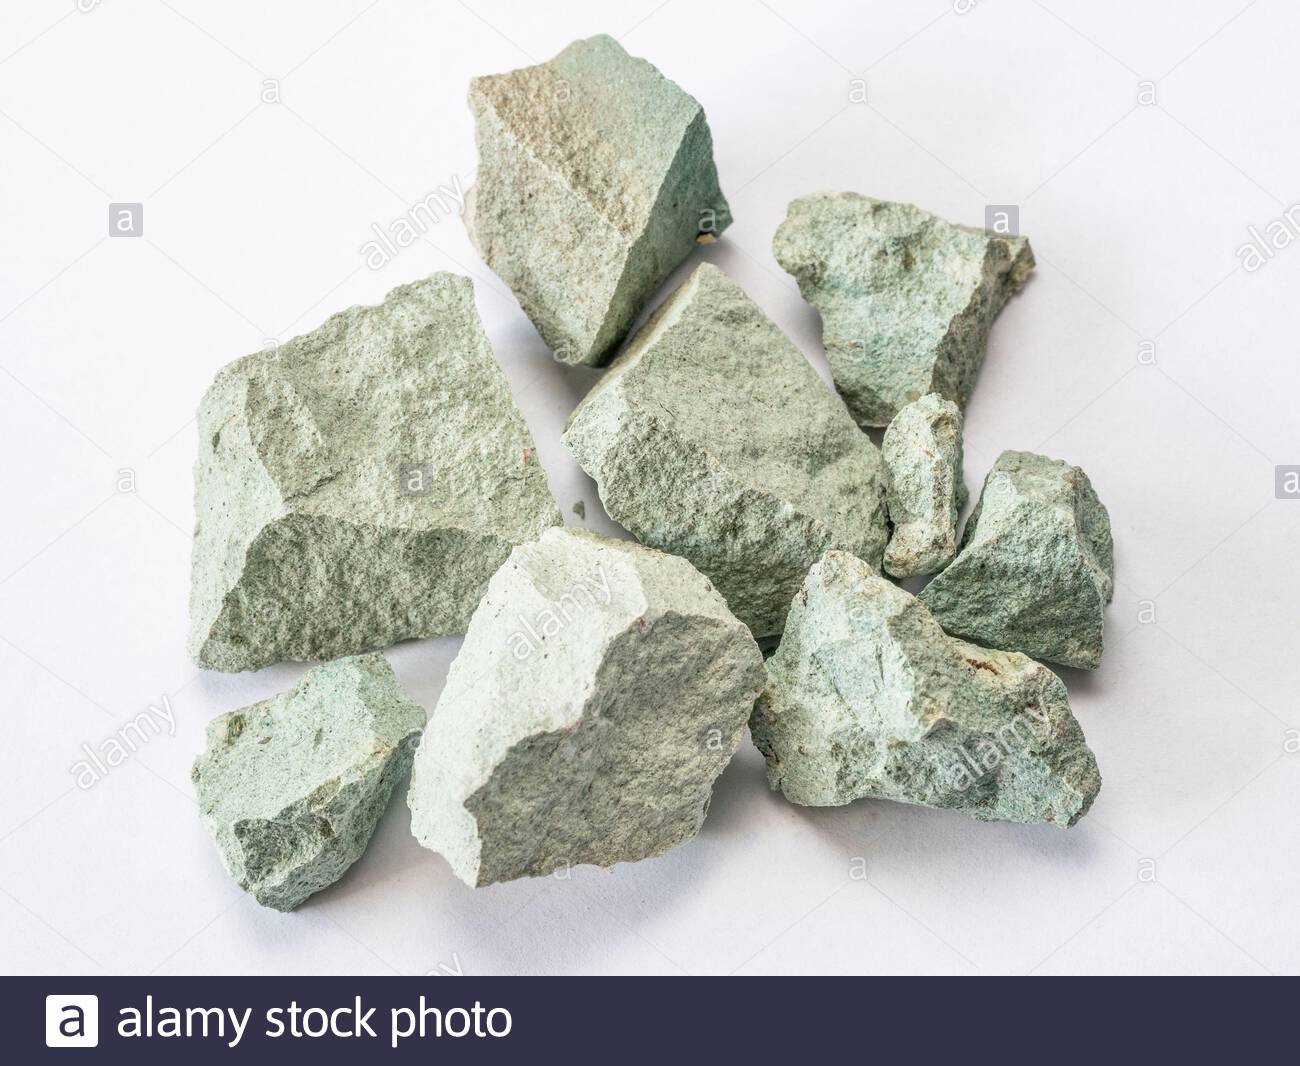 Zeolite Stones For Sale